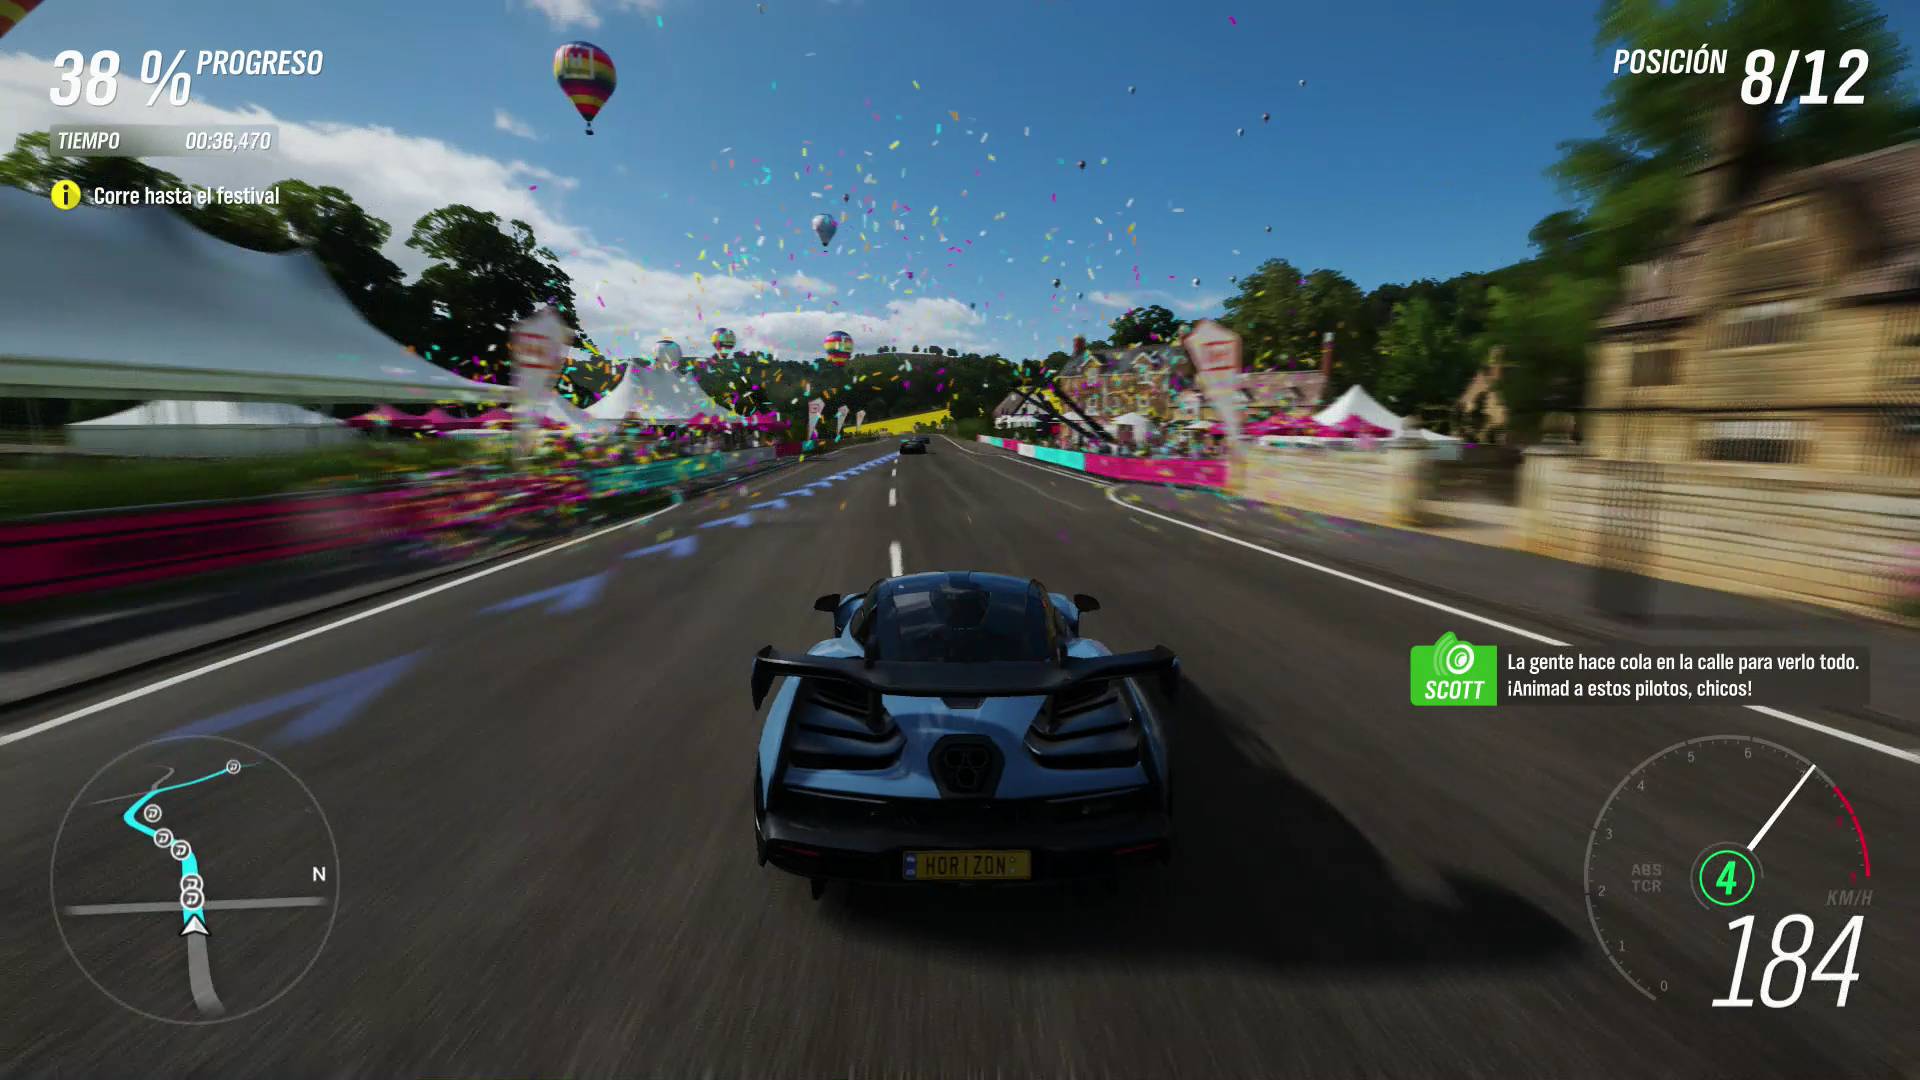 Los mejores juegos de coches - Forza, Gran Turismo, Mario Kart